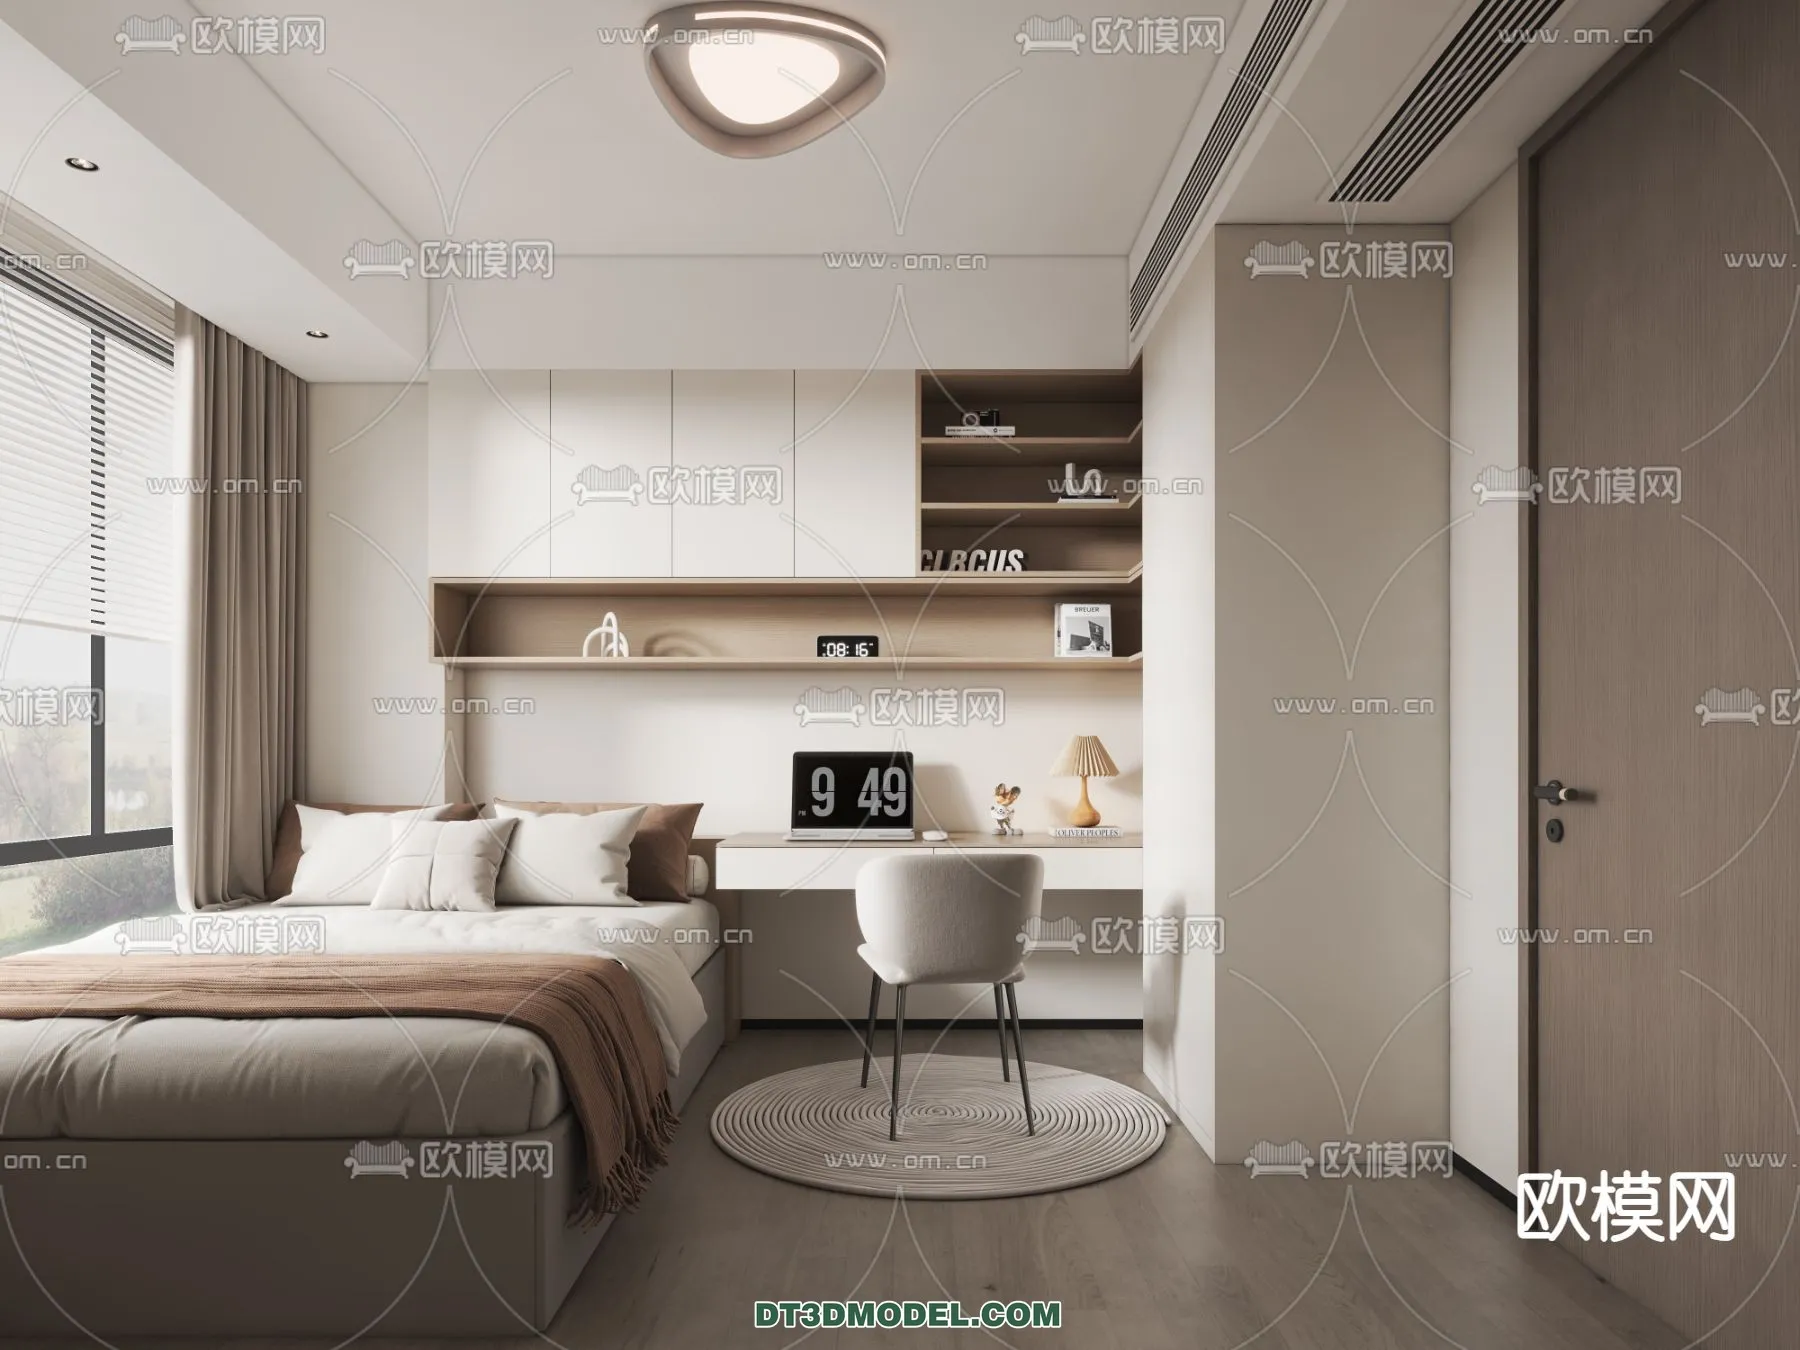 Tatami Bedroom – Japan Bedroom – 3D Scene – 019